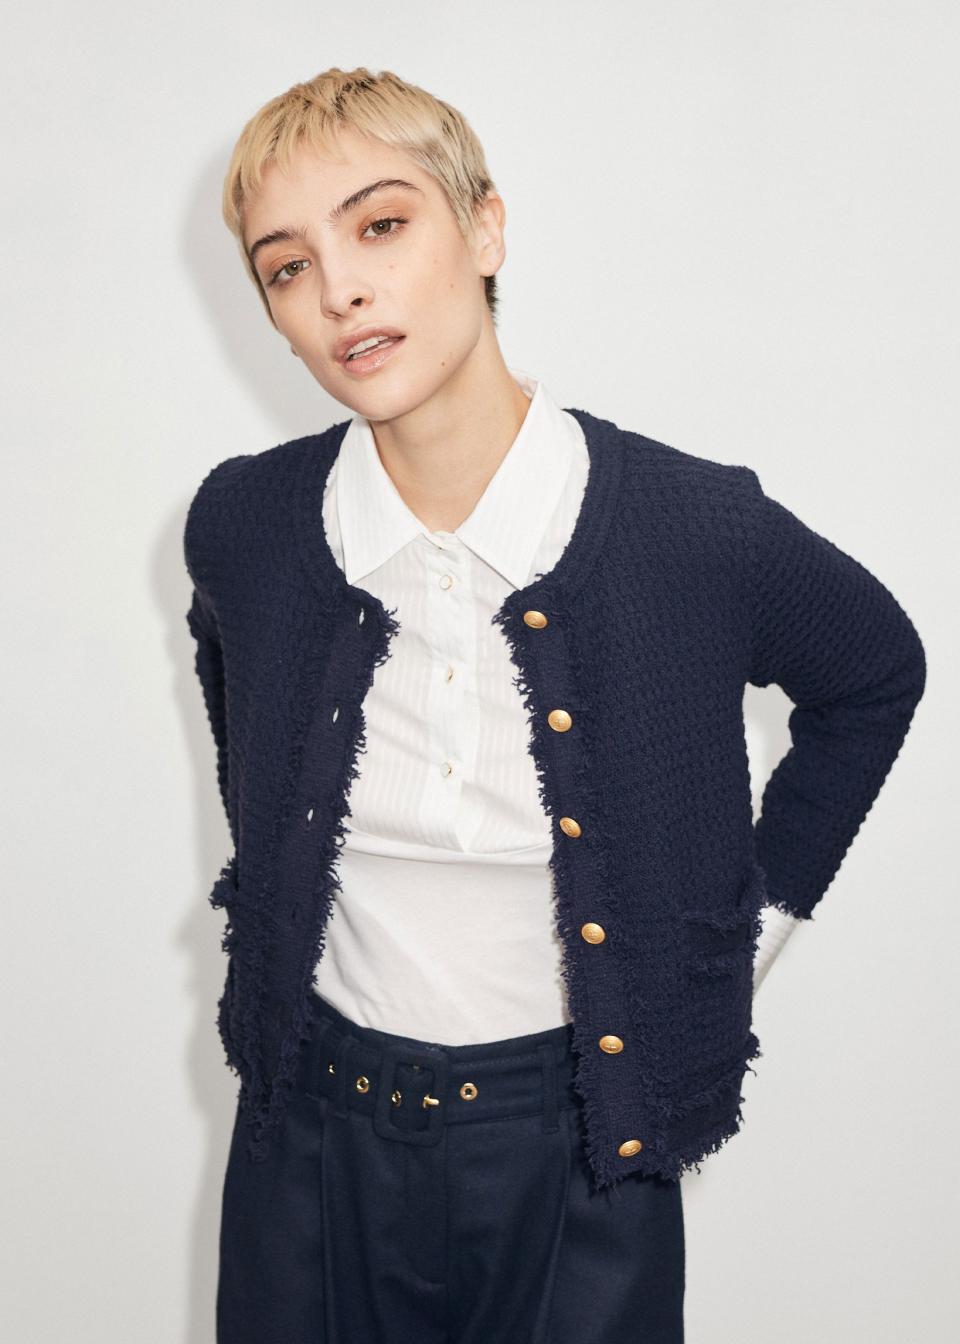 2) Cropped Bouclé Knit Jacket